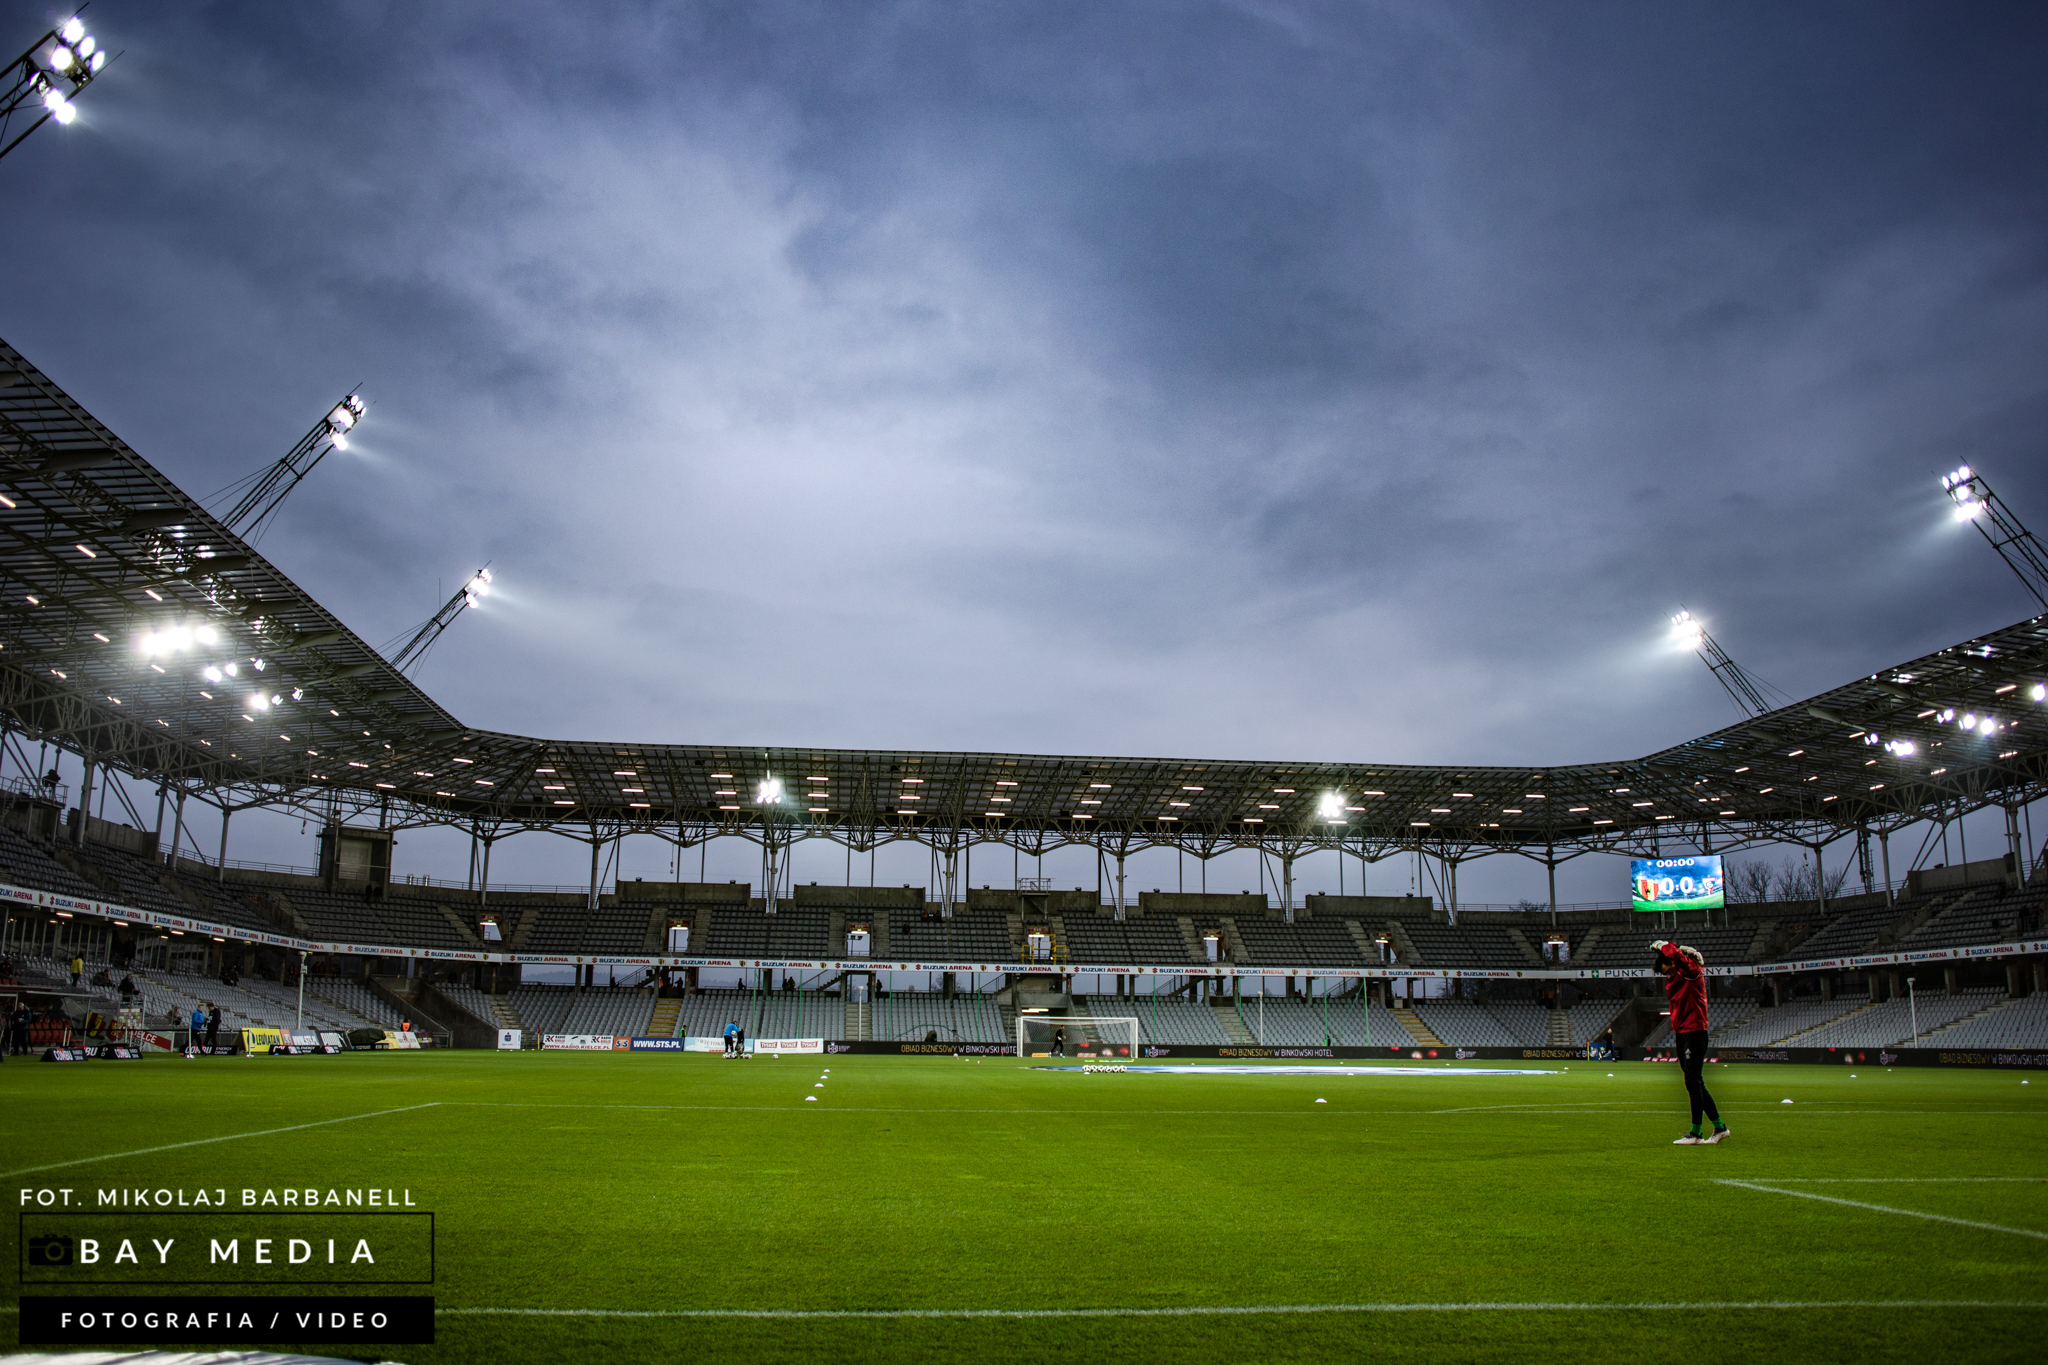 Korona Kielce stadion